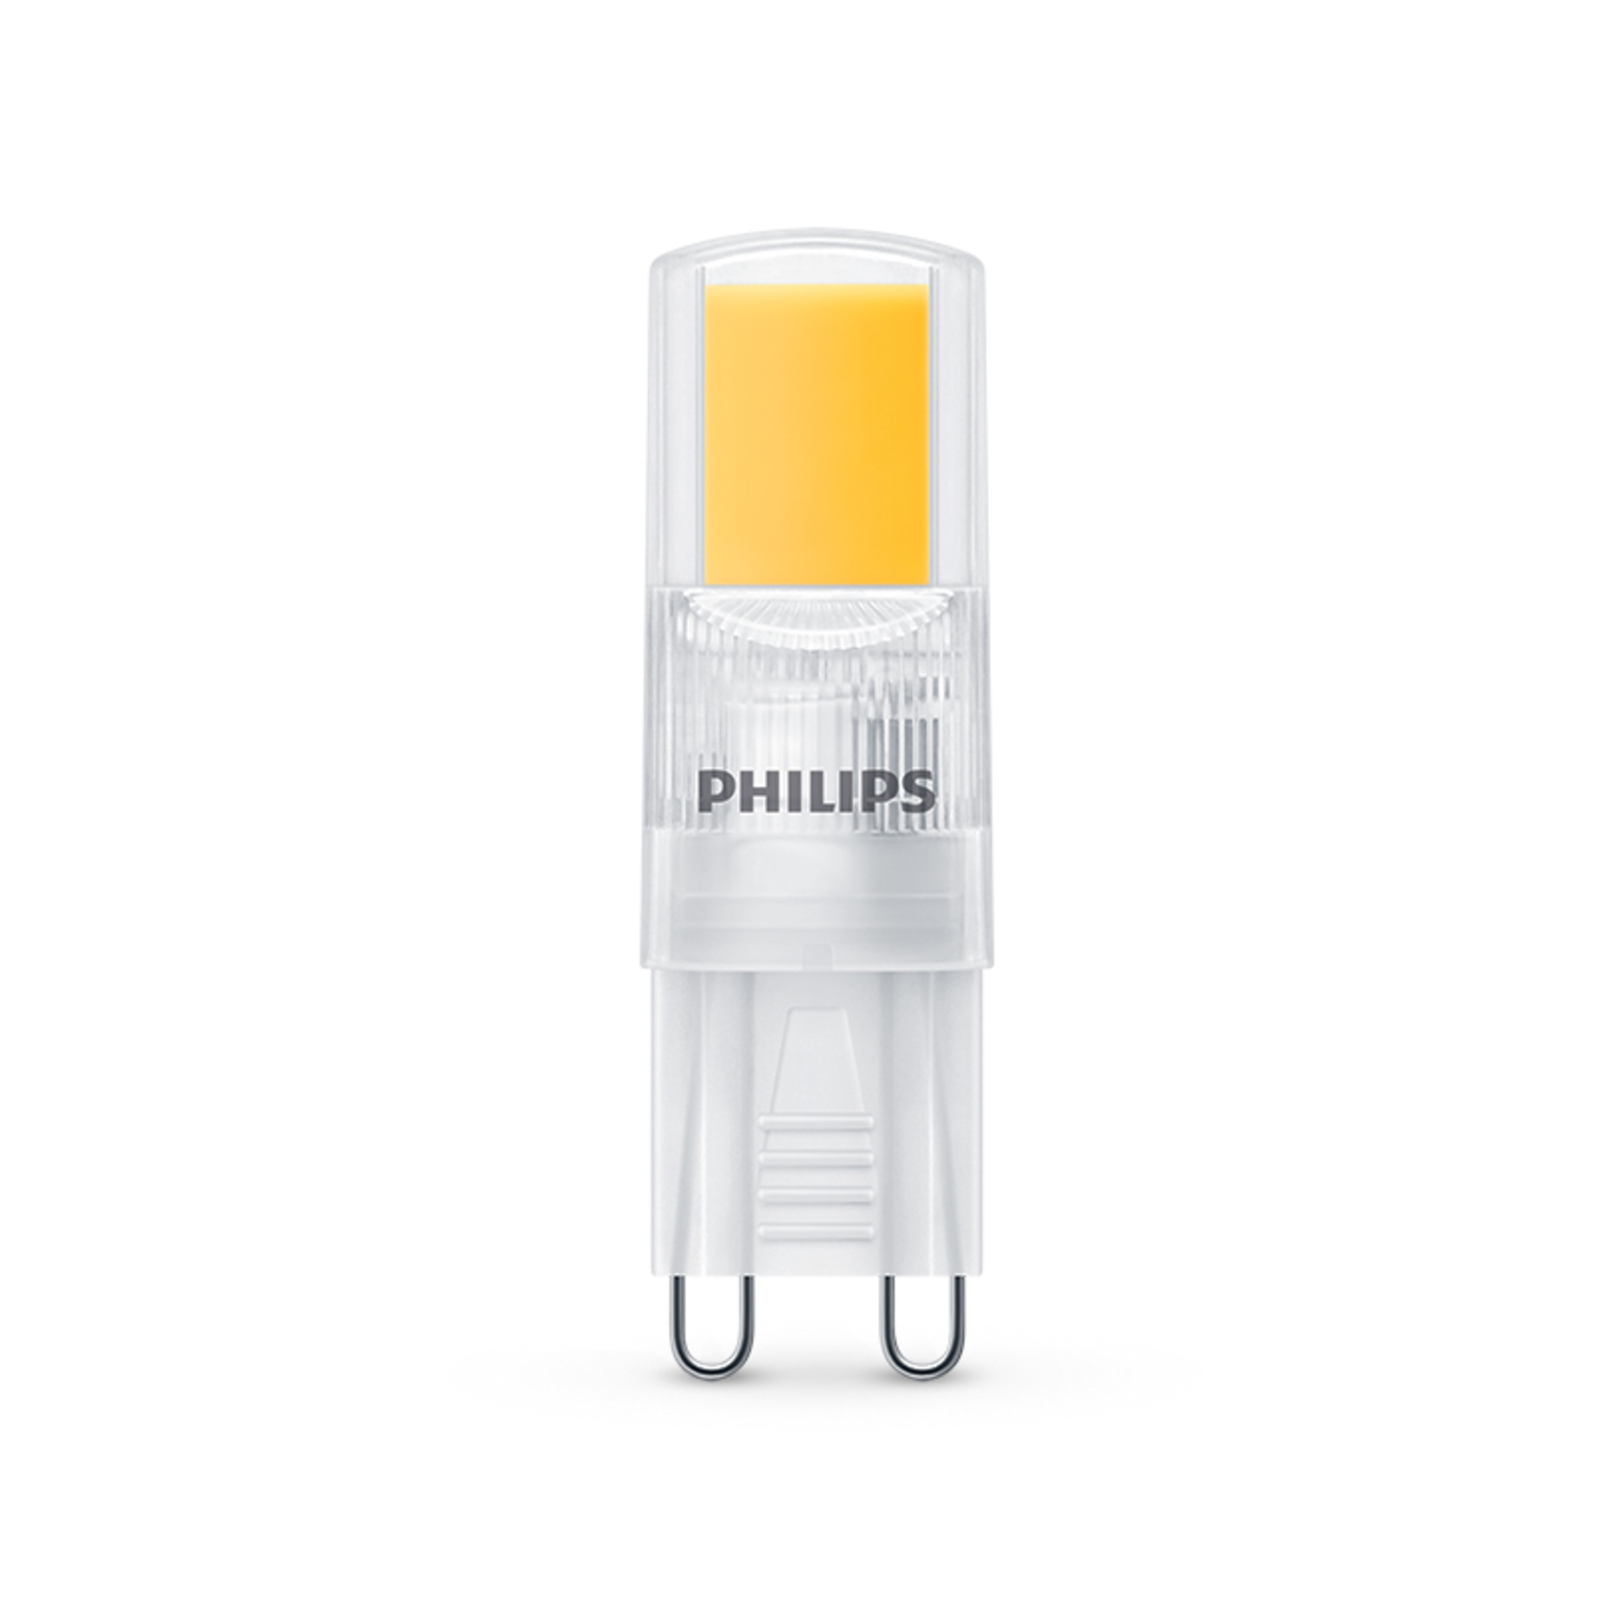 Philips ampoule LED G9 2W 220lm 2 700K claire x6